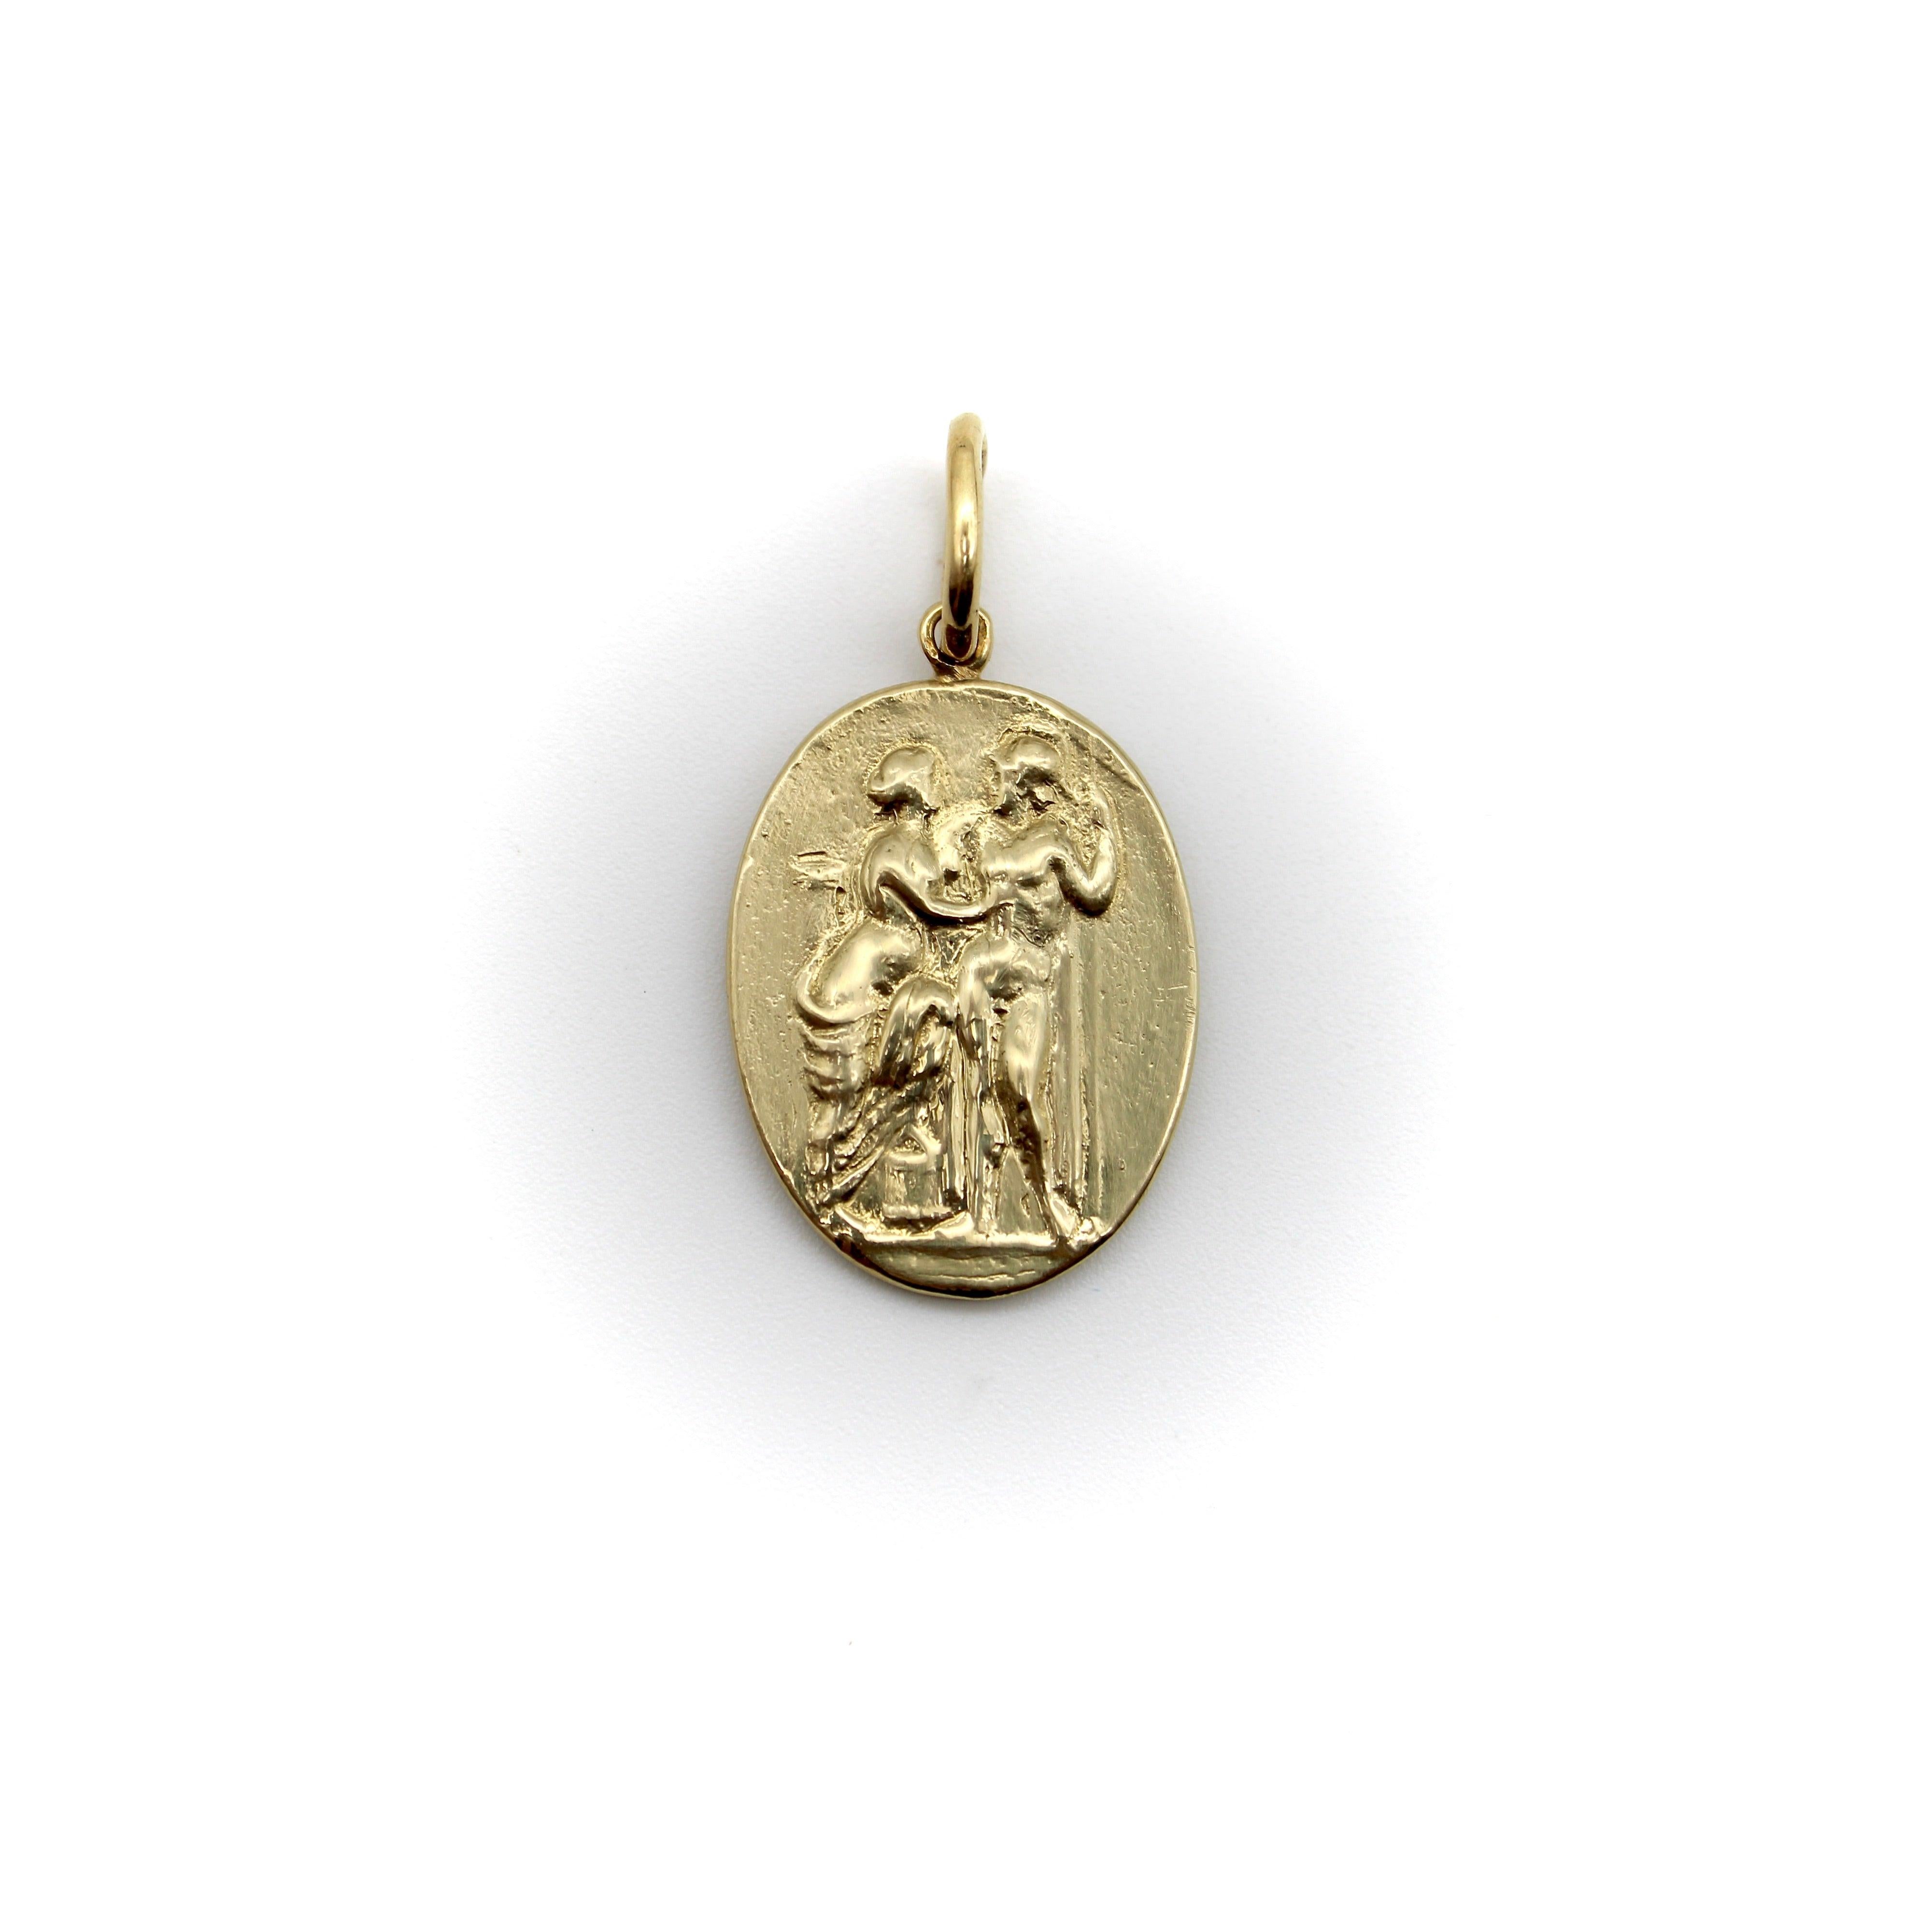 Créé dans le cadre de notre collection signature, ce médaillon en creux en or 14 carats représente Vénus et Marli, debout dans une étreinte. Vénus, la déesse de l'amour et de la beauté, est vaguement drapée dans une étoffe, tandis que son amant